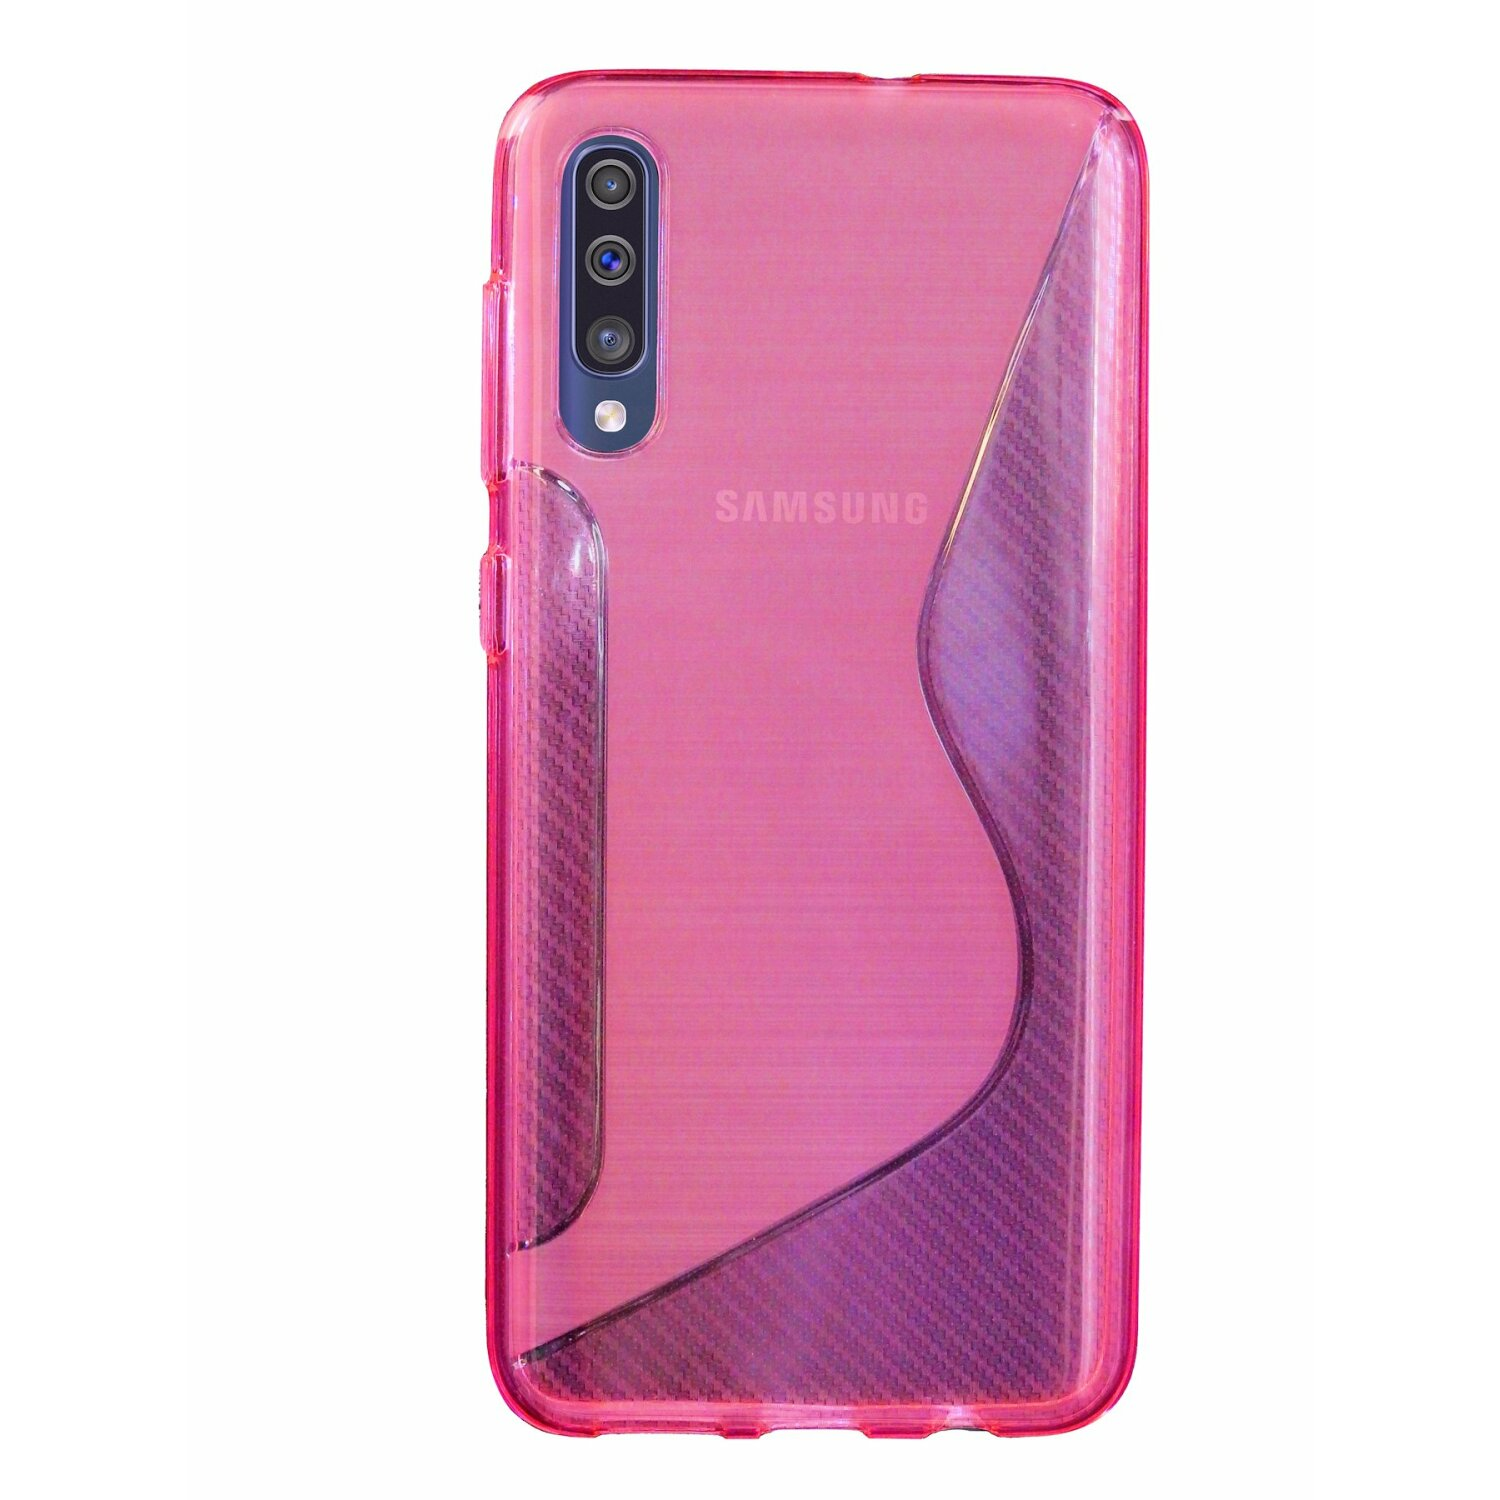 COFI S-Line Samsung, A30s, Rosa Galaxy Bumper, Cover